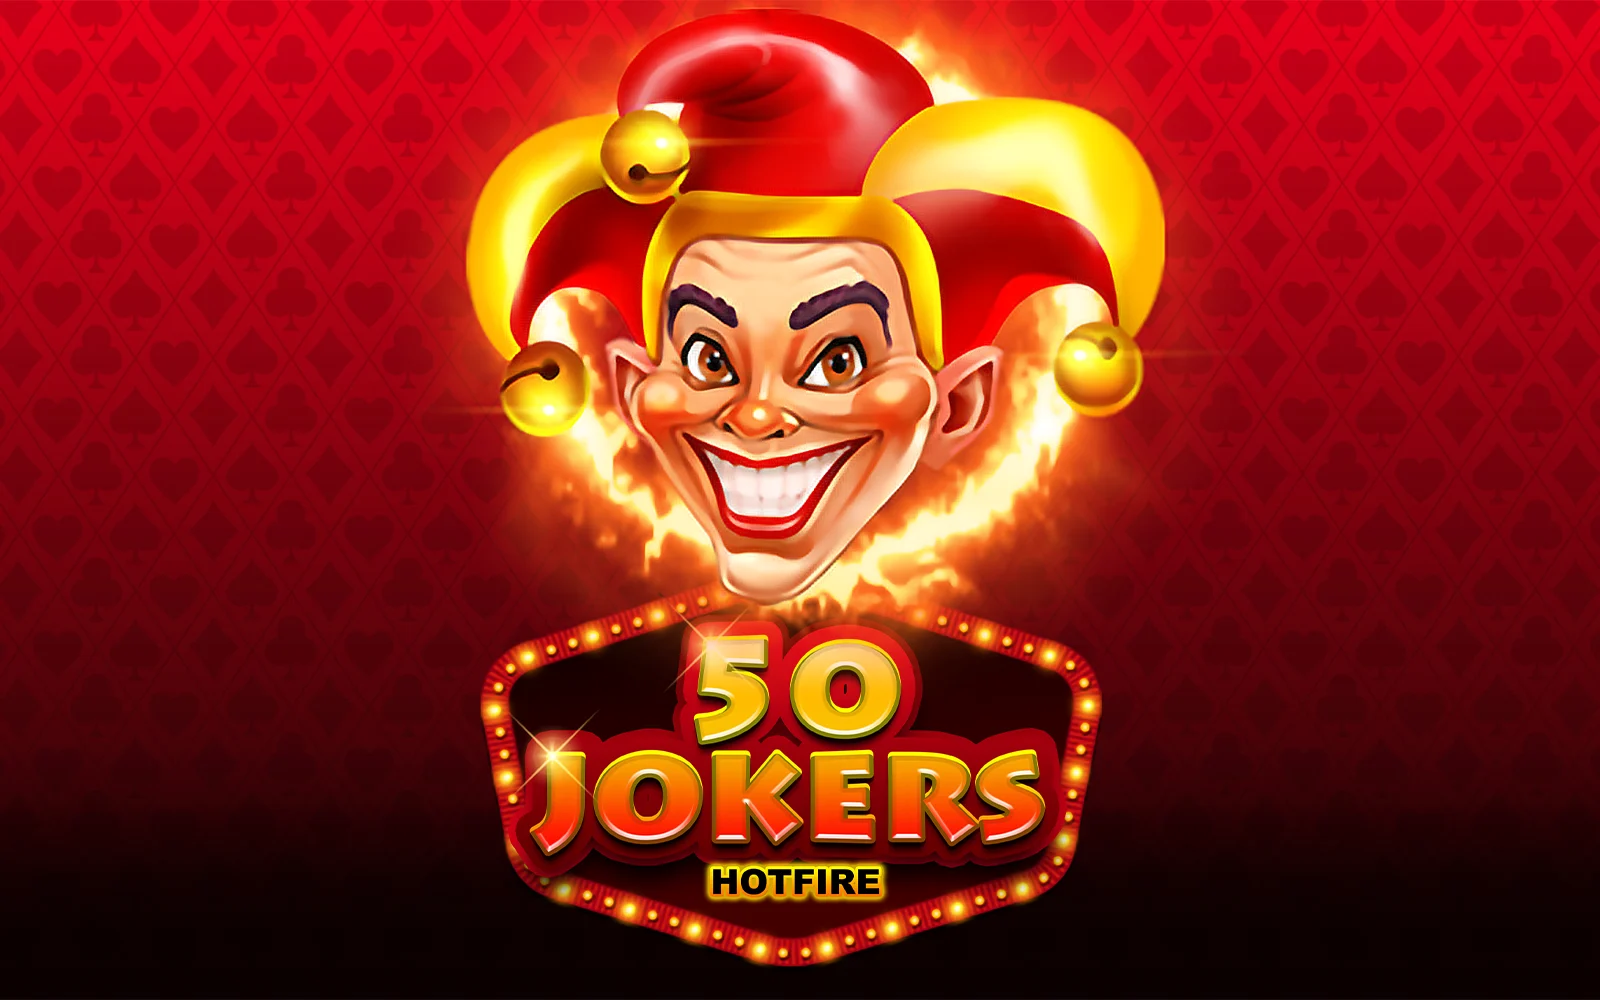 Juega a 50 Jokers HOTFIRE en el casino en línea de Starcasino.be